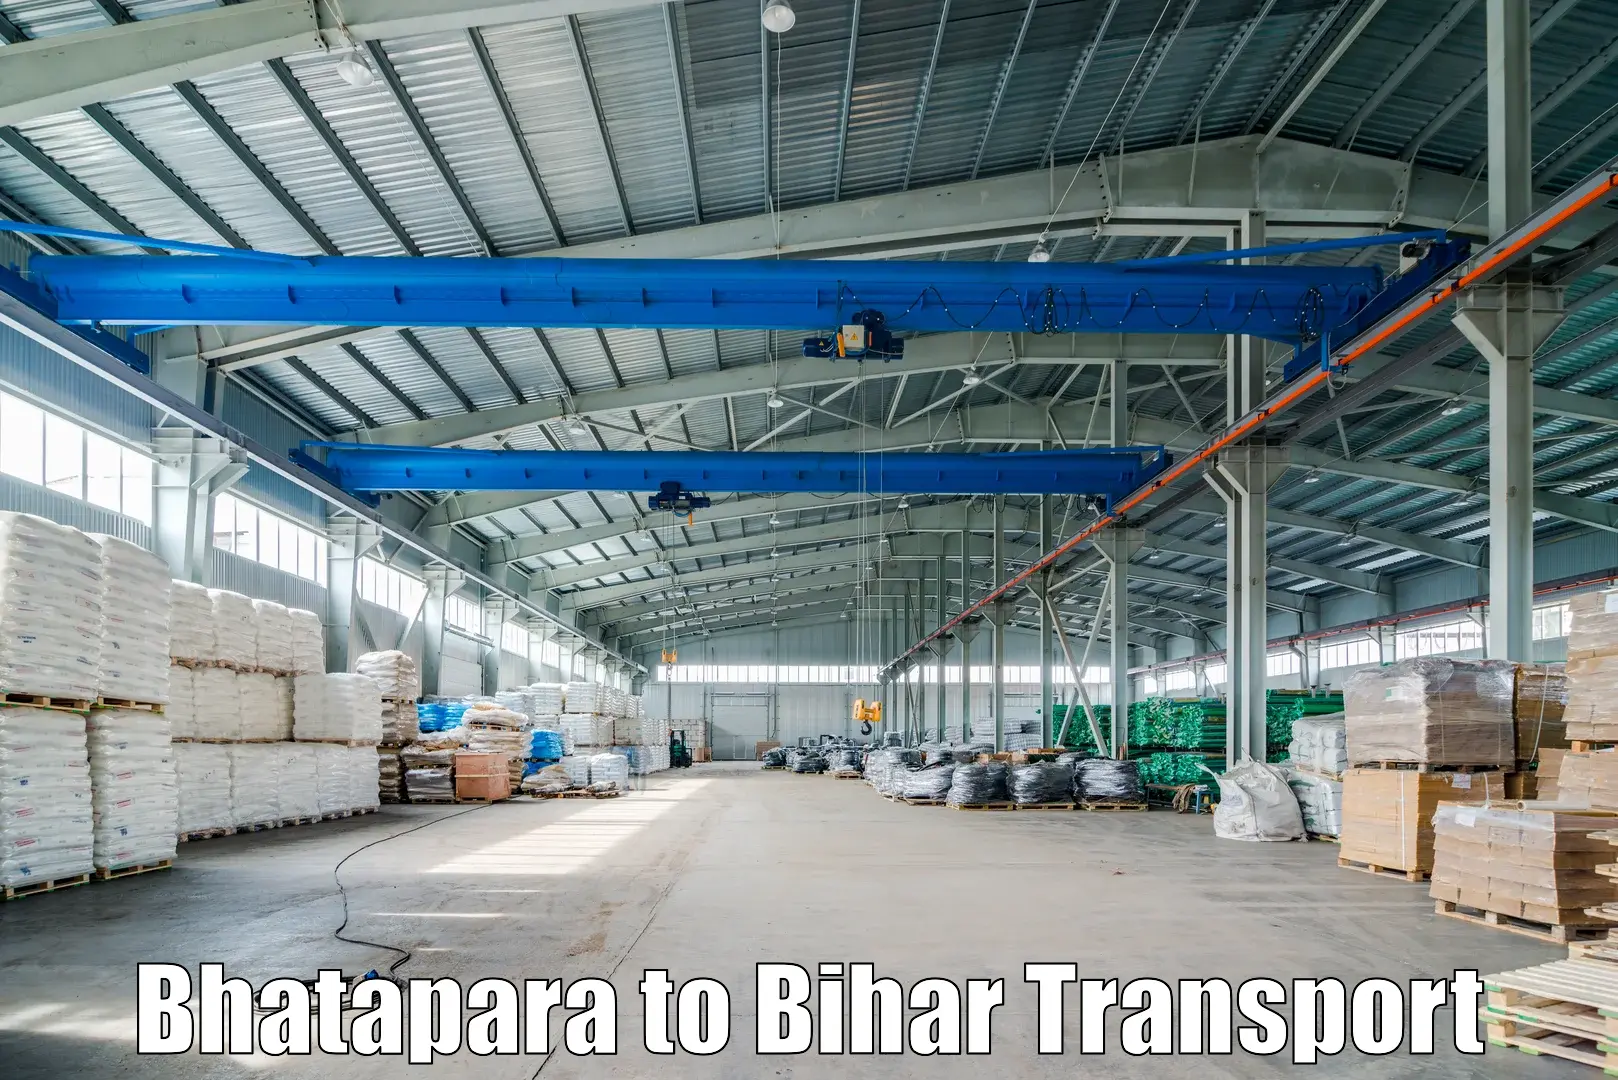 Truck transport companies in India Bhatapara to Hasanpura